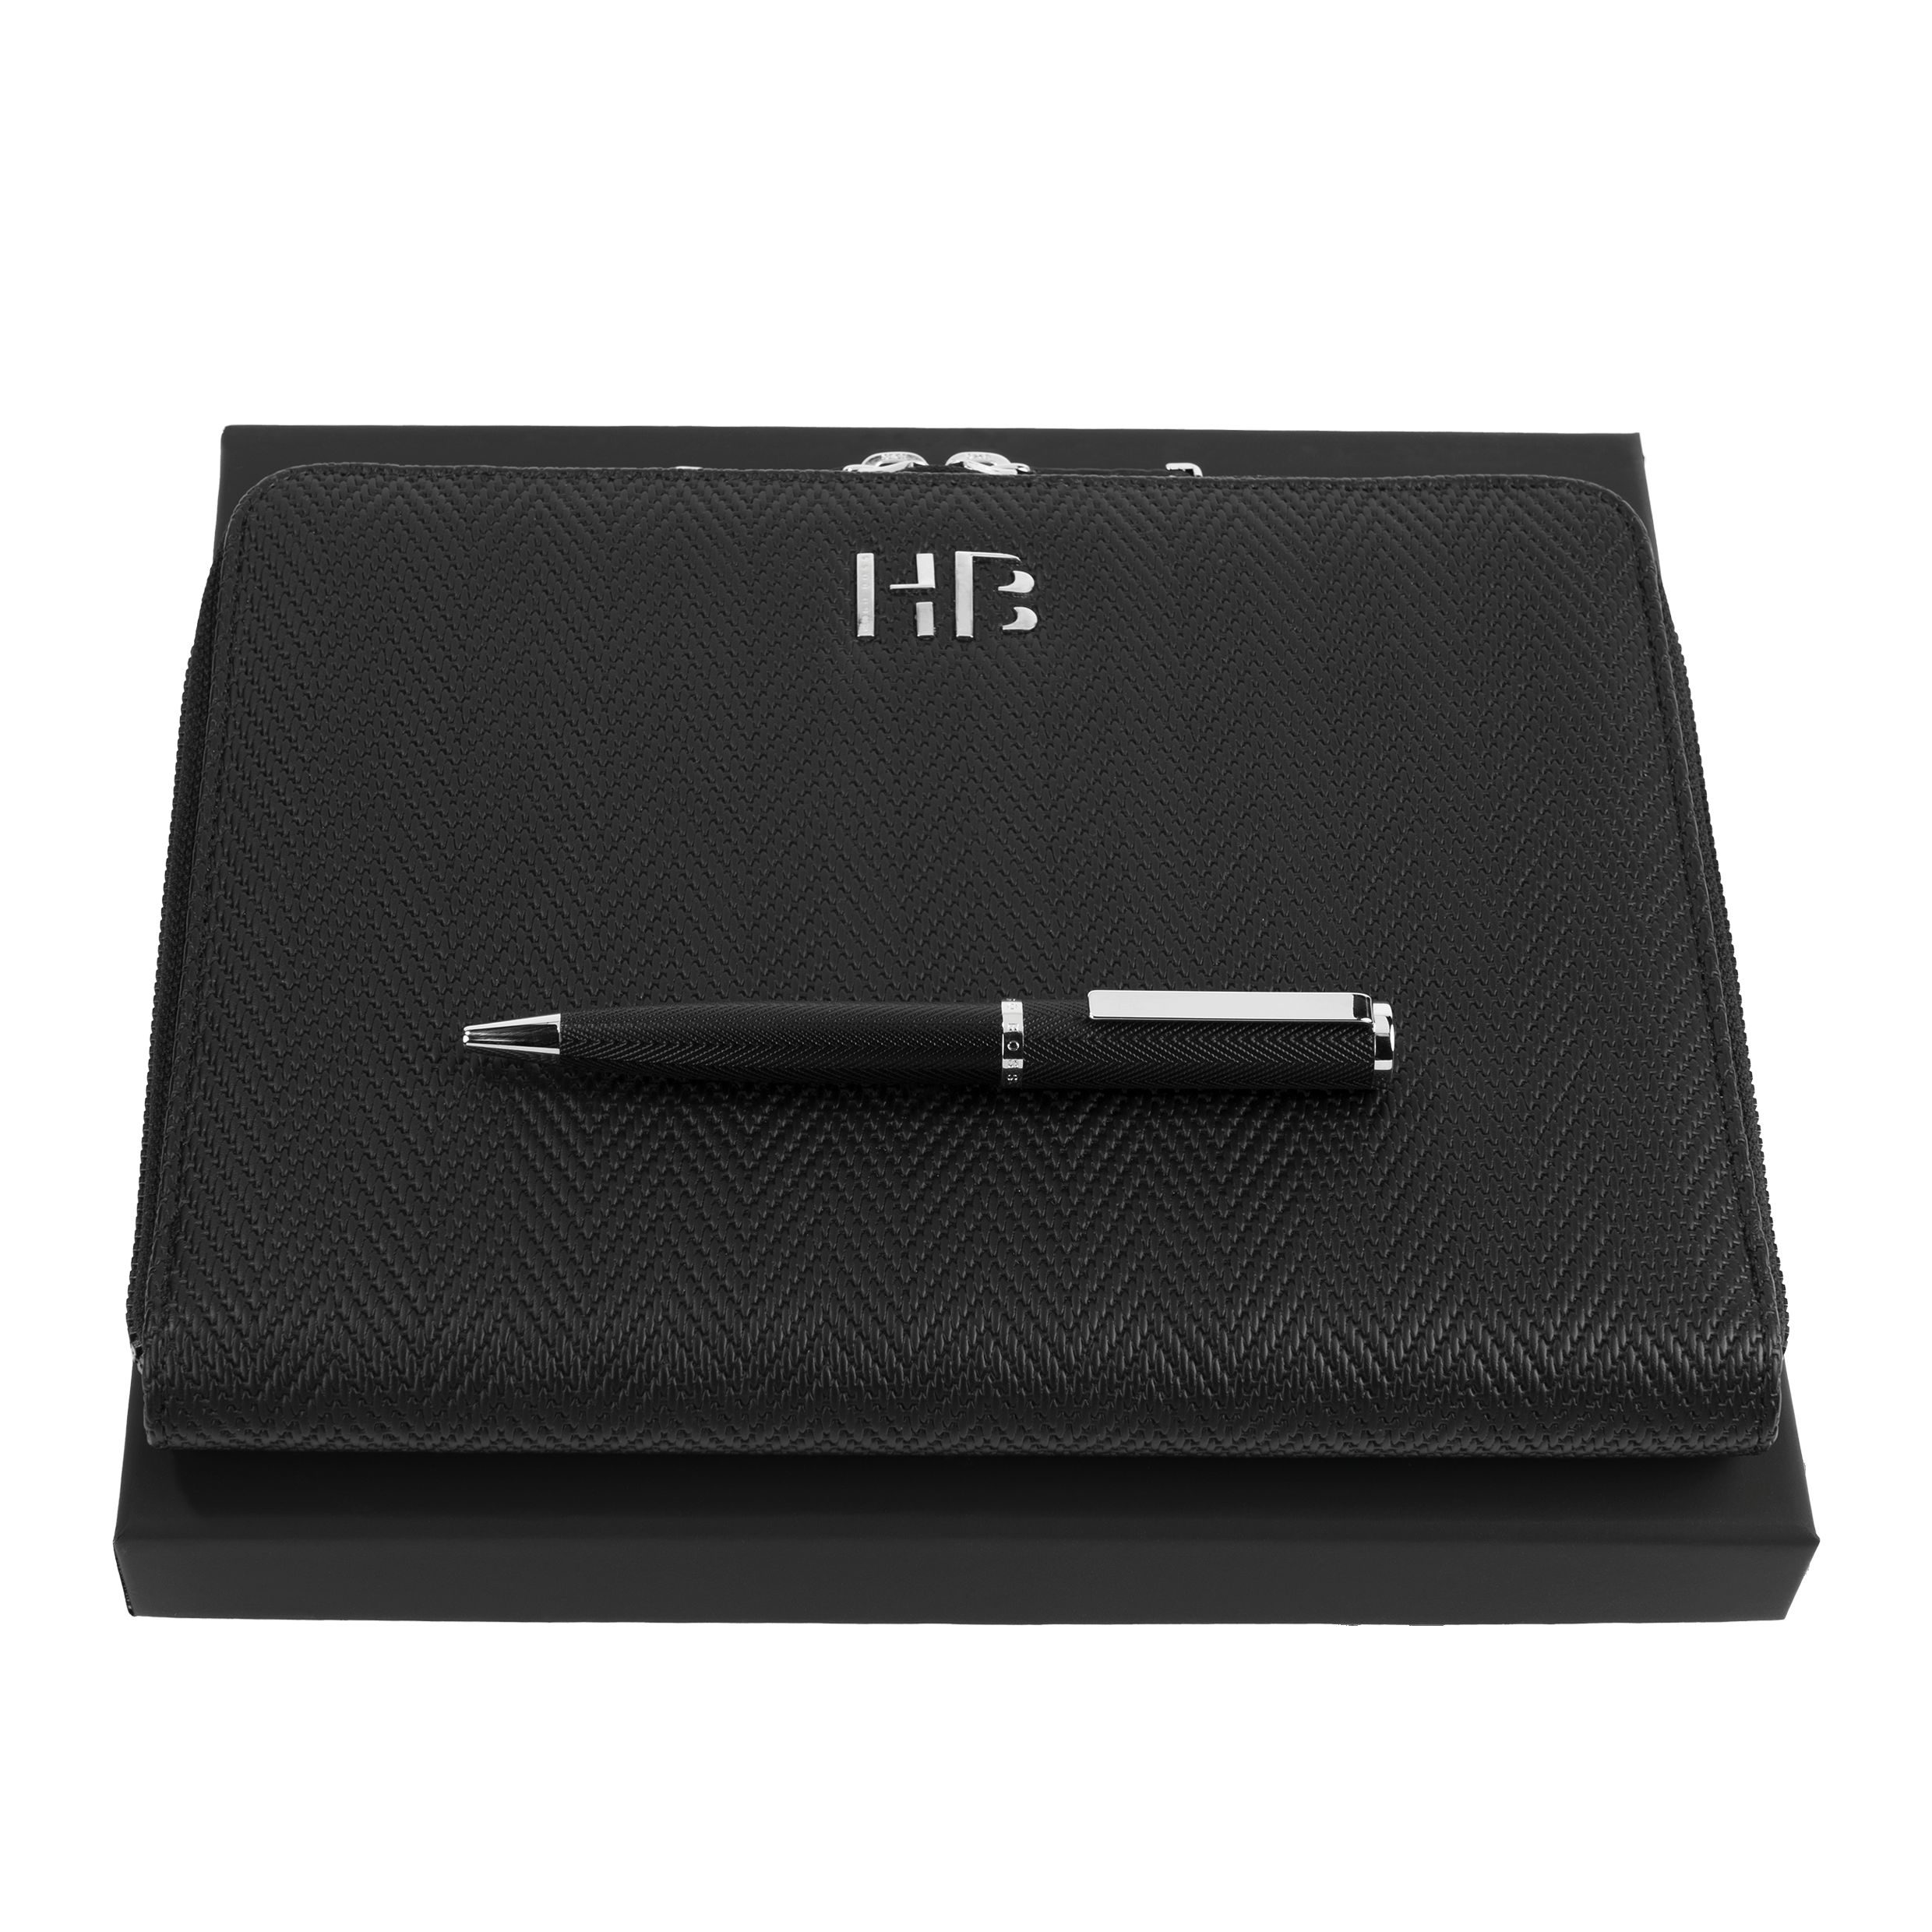 Zestaw upominkowy HUGO BOSS długopis i teczka A5 - HSI1064B + HTM106A